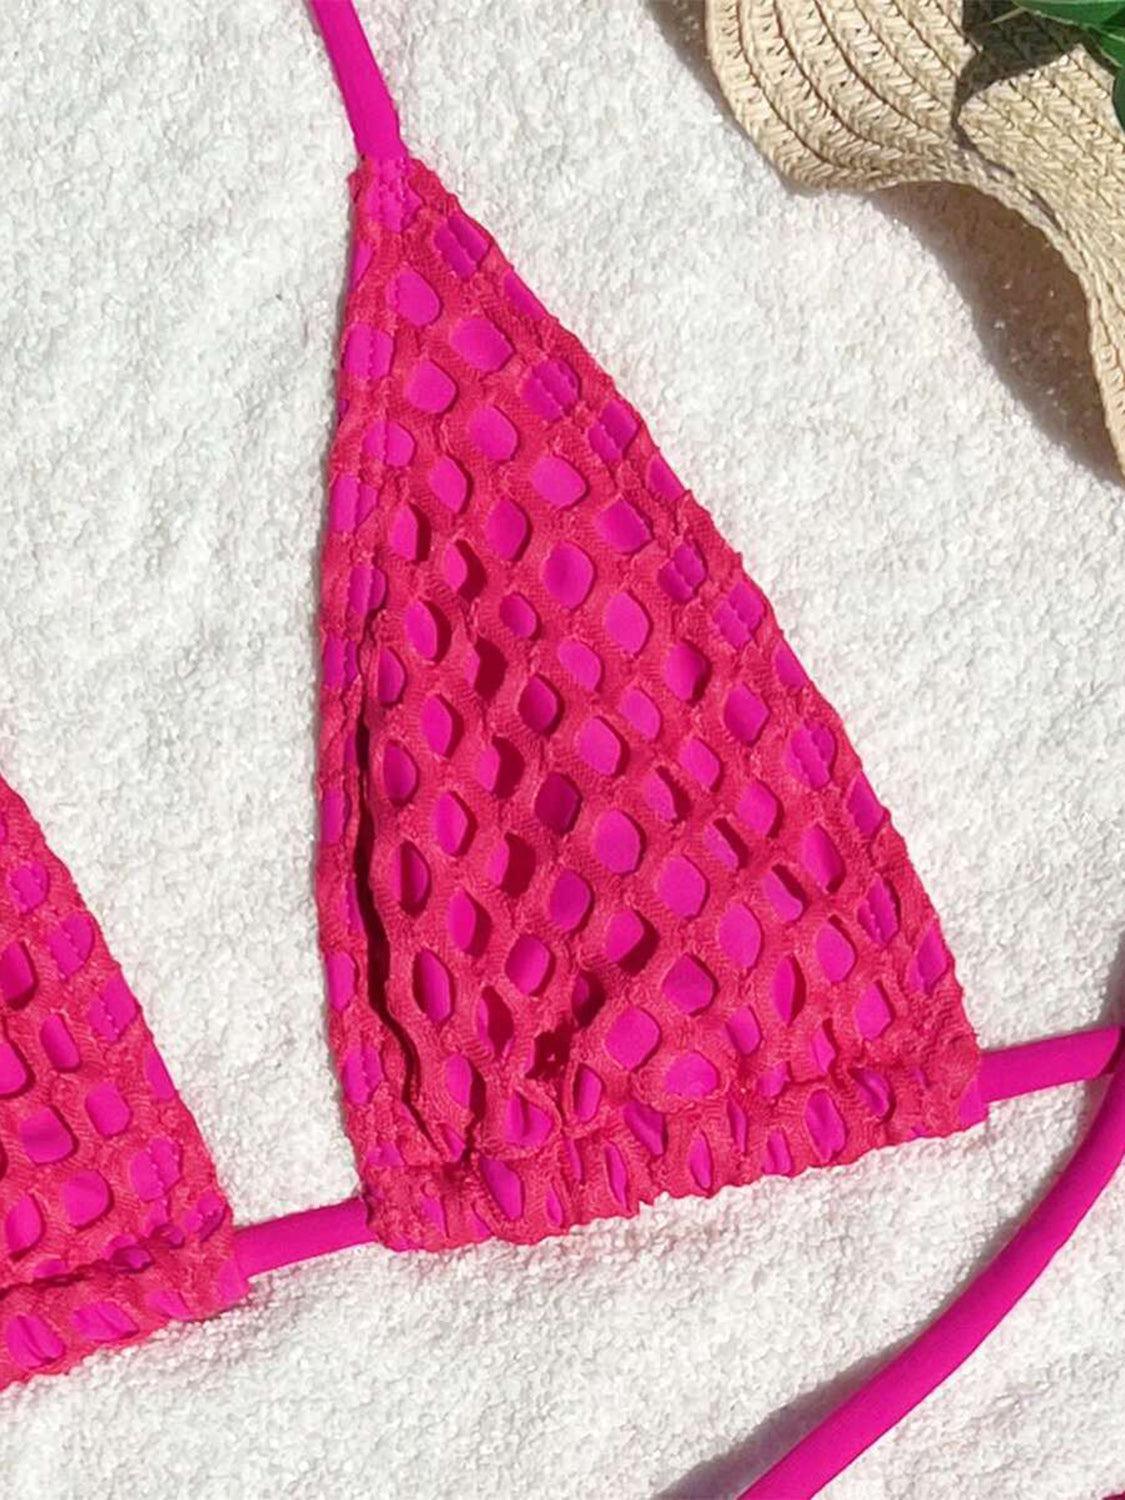 a close up of a bikini top on a towel